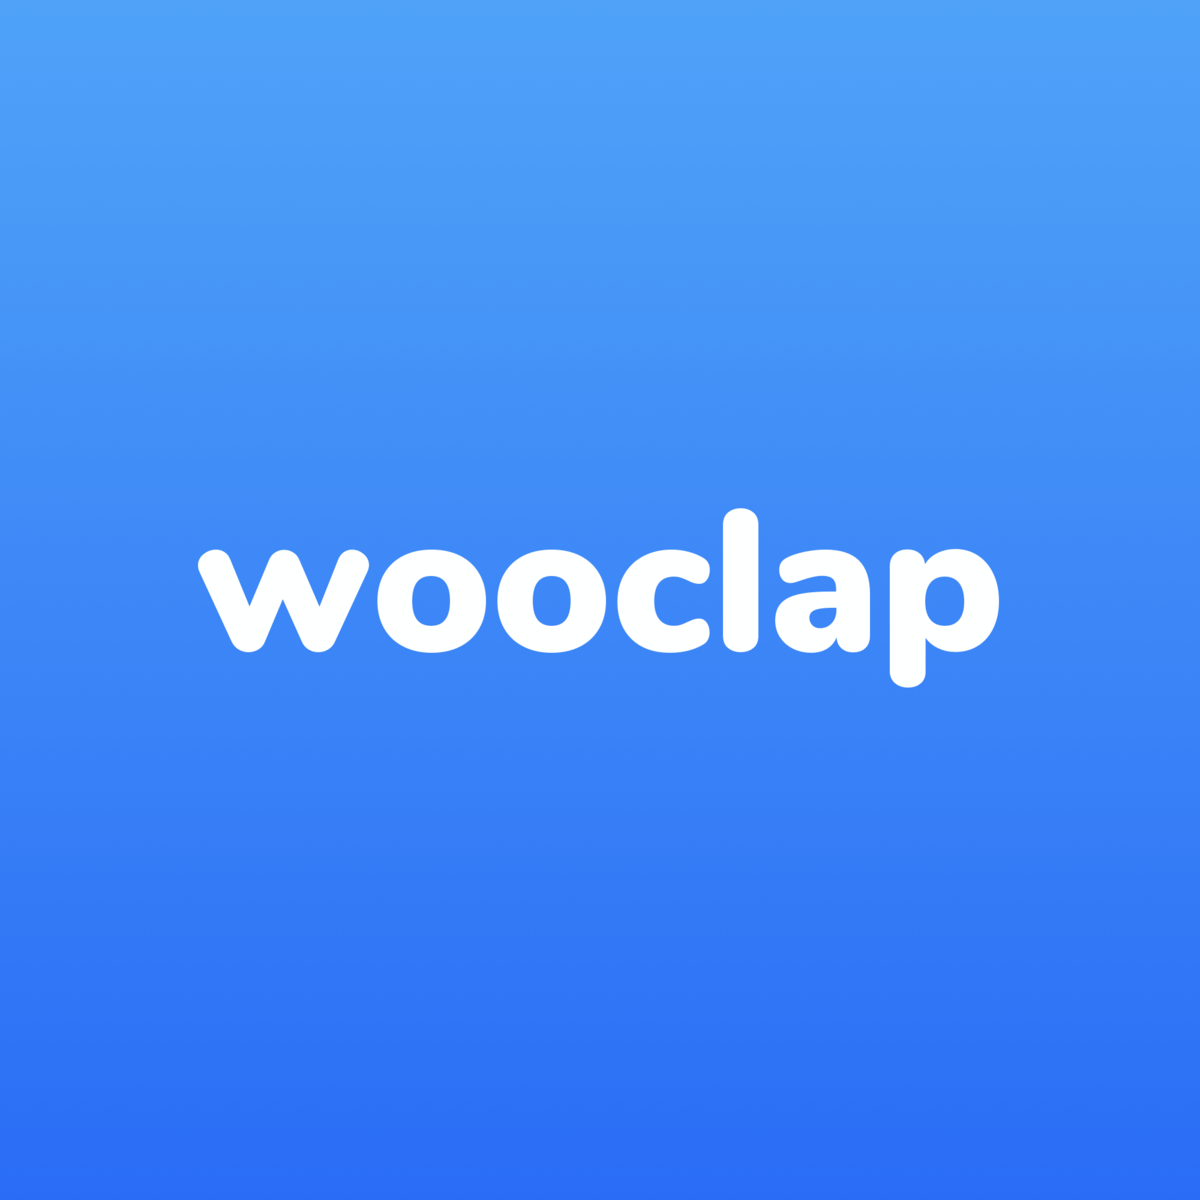 Wooclap logo